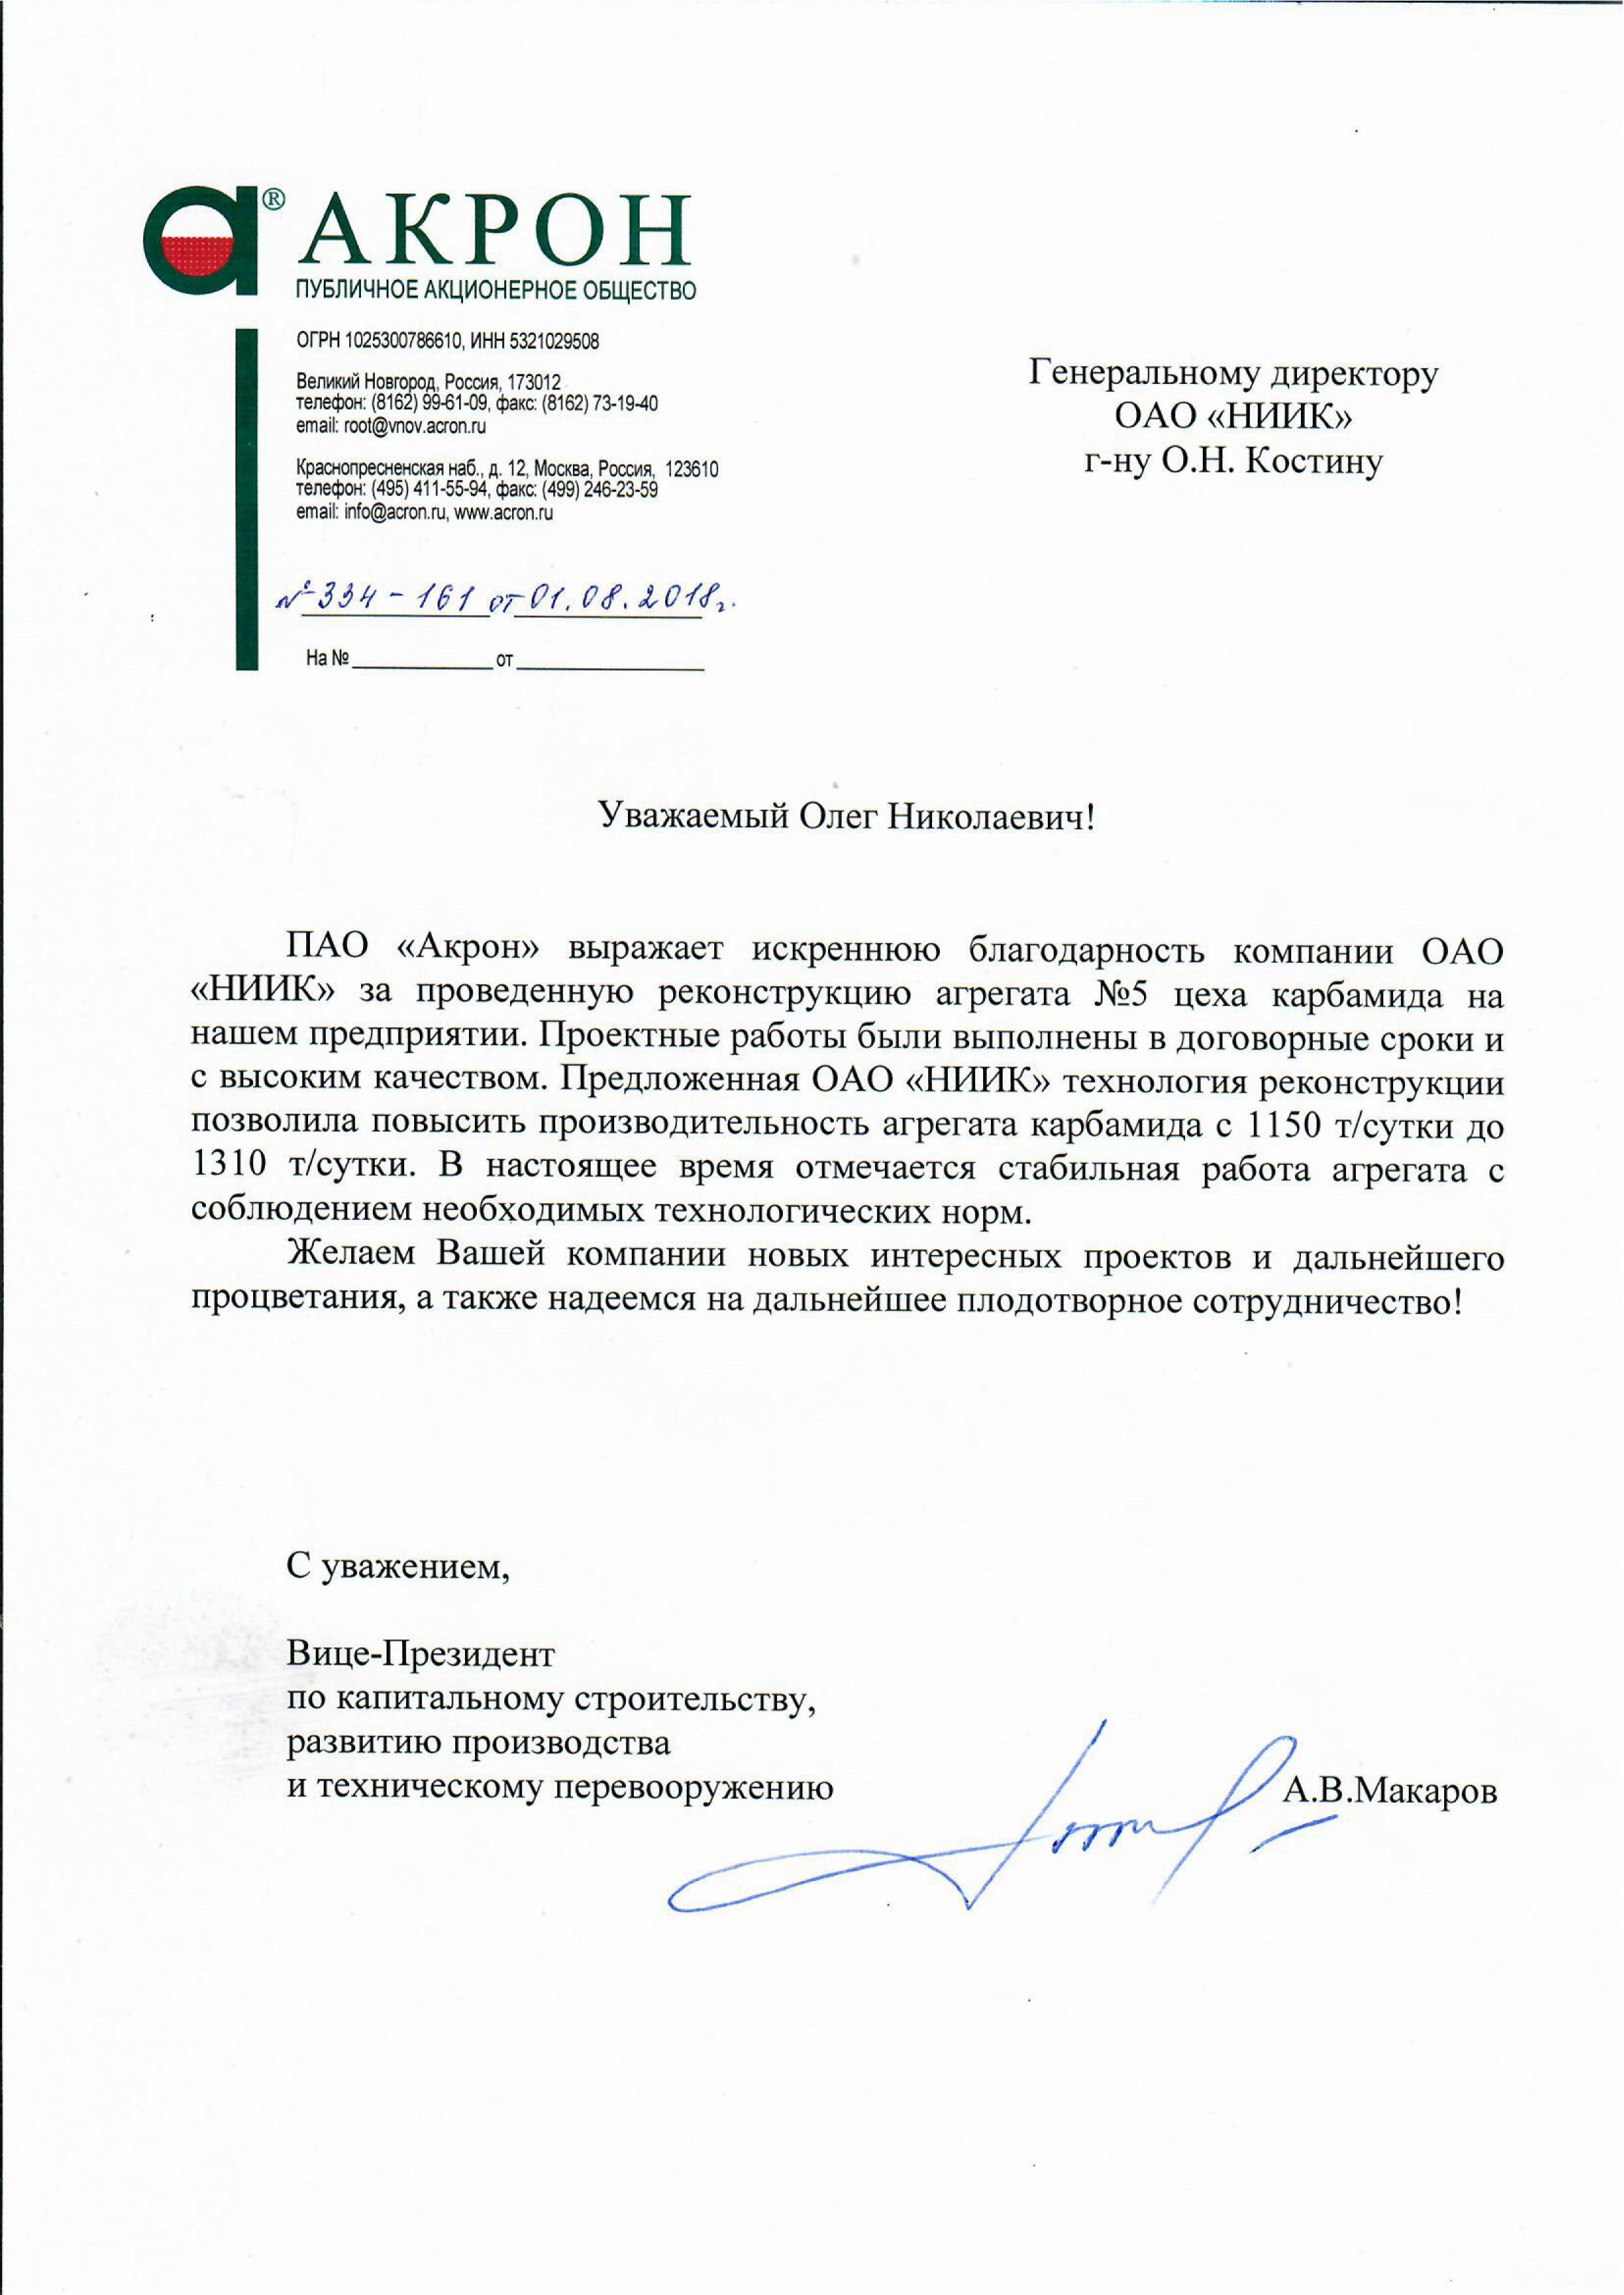 НИИК получил благодарственное письмо от ПАО «Акрон» за техническое перевооружение агрегата карбамида № 5 